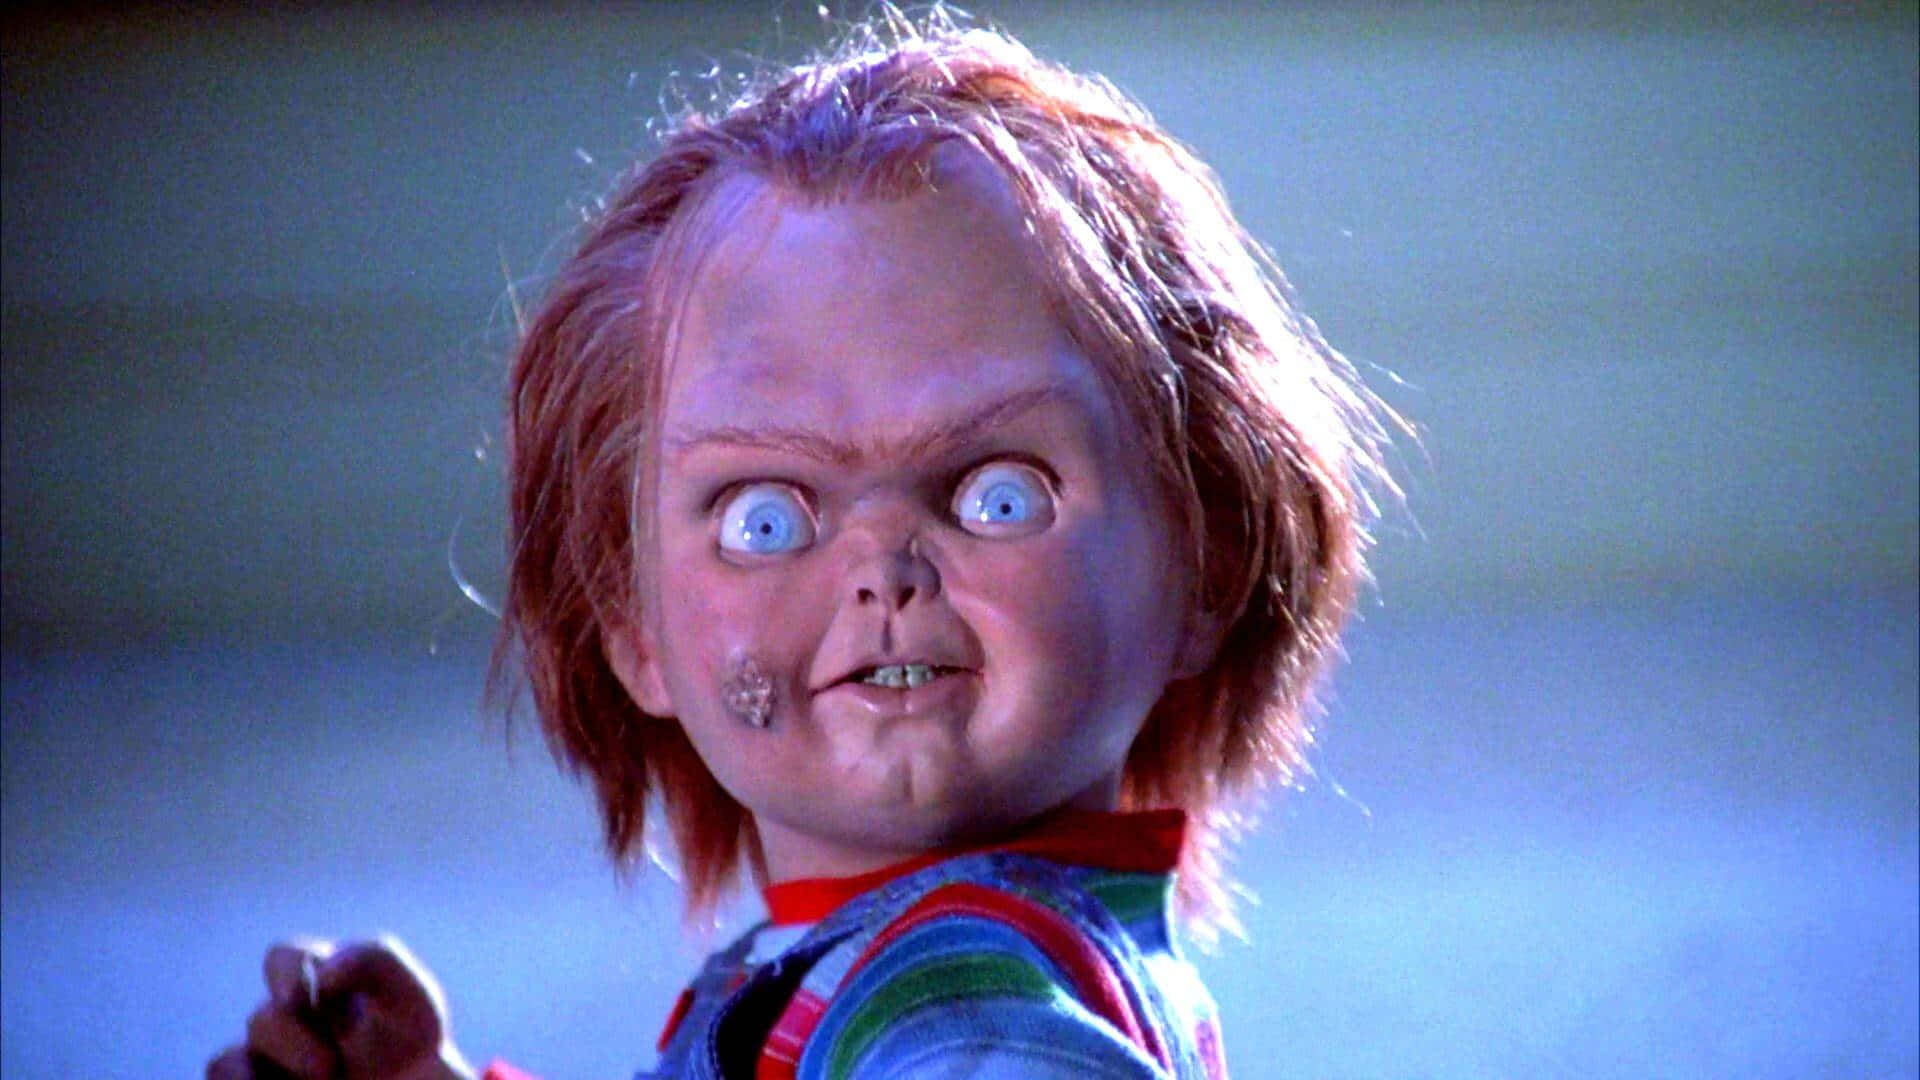 Lustiges,gruseliges Gesicht: Chucky-puppe Aus Dem Film 